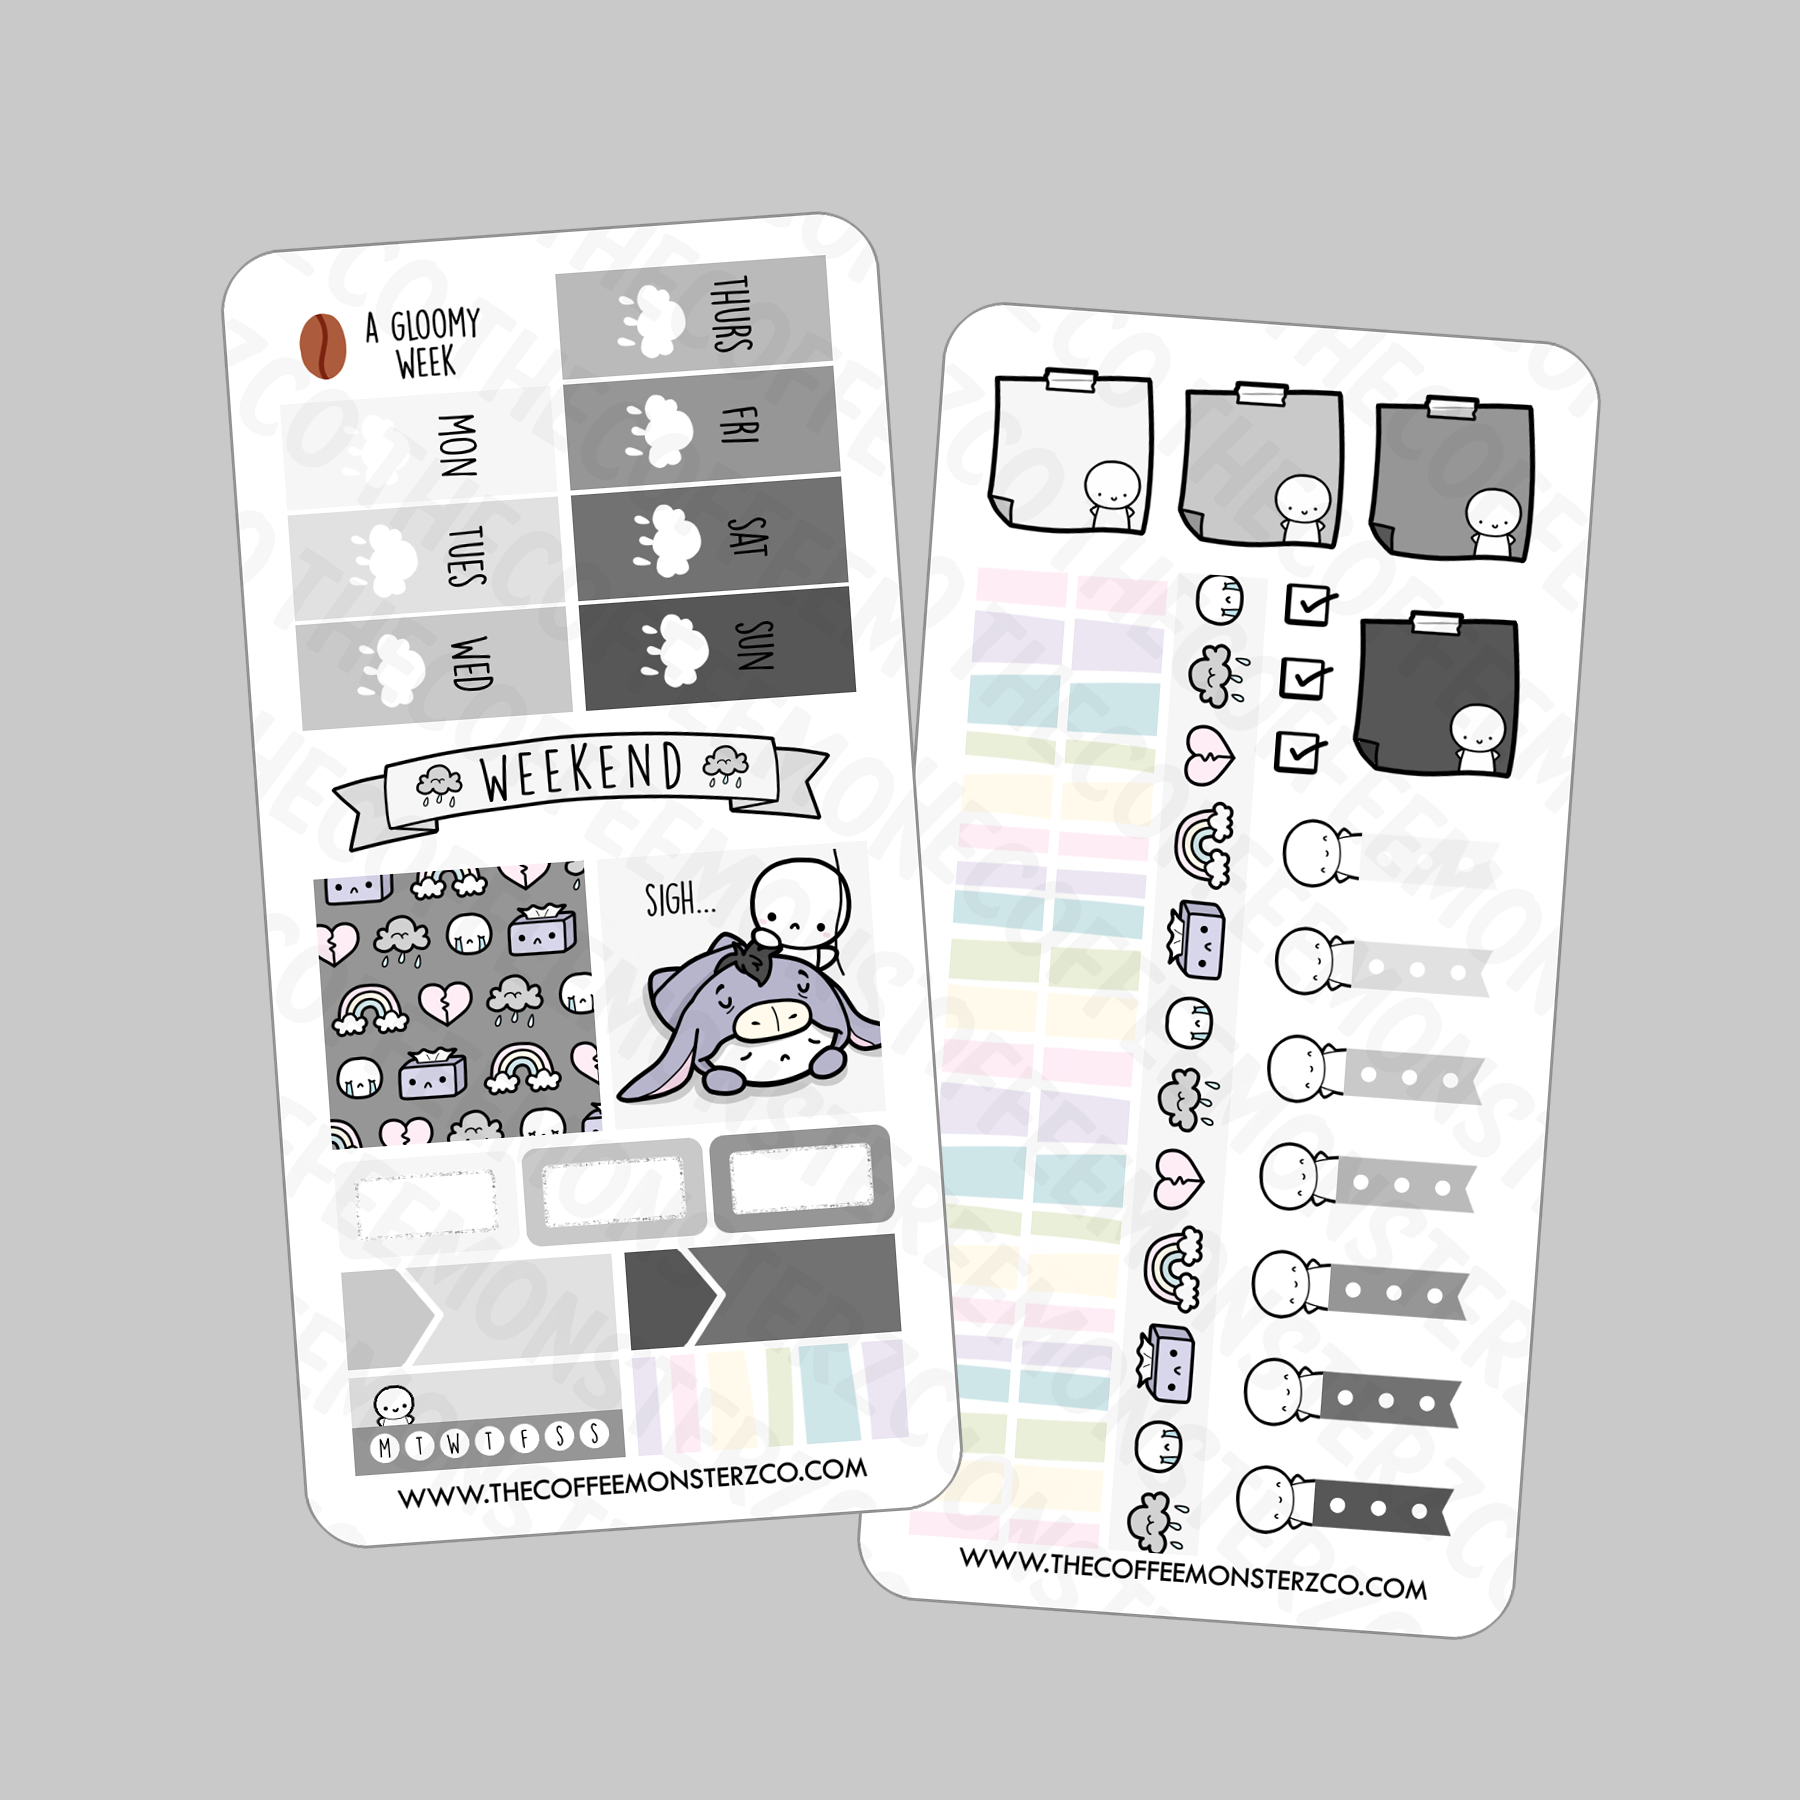 Beige Minimalism Hobonichi Weekly Planner Sticker kit